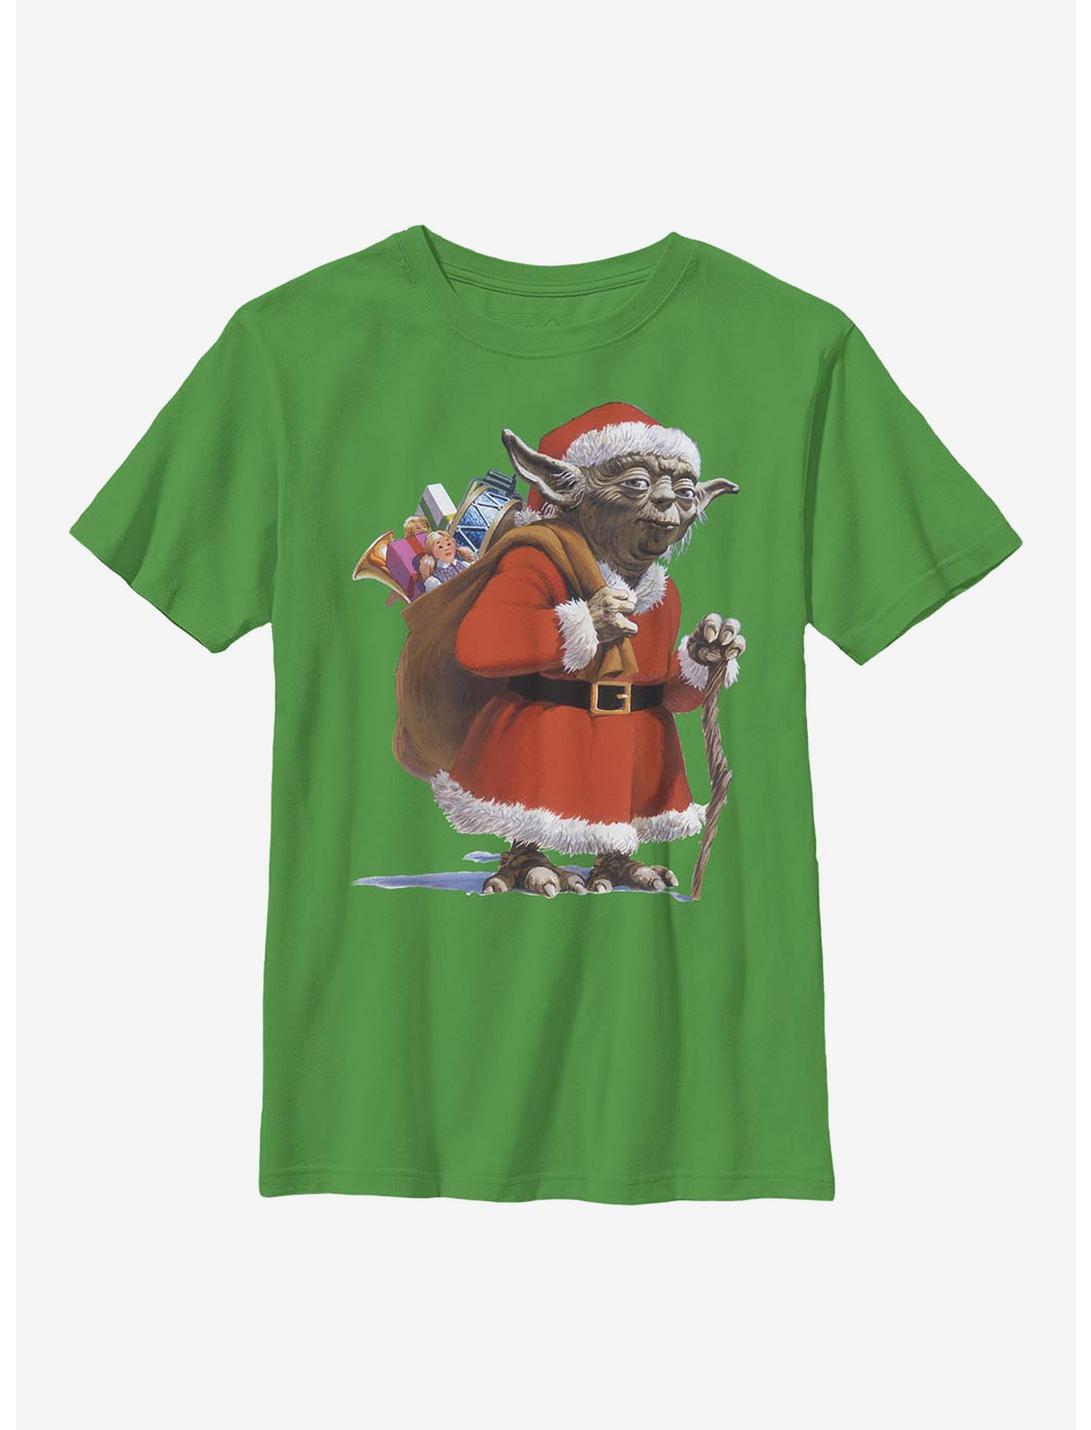 Star Wars Santa Yoda Comp Youth T-Shirt, KELLY, hi-res